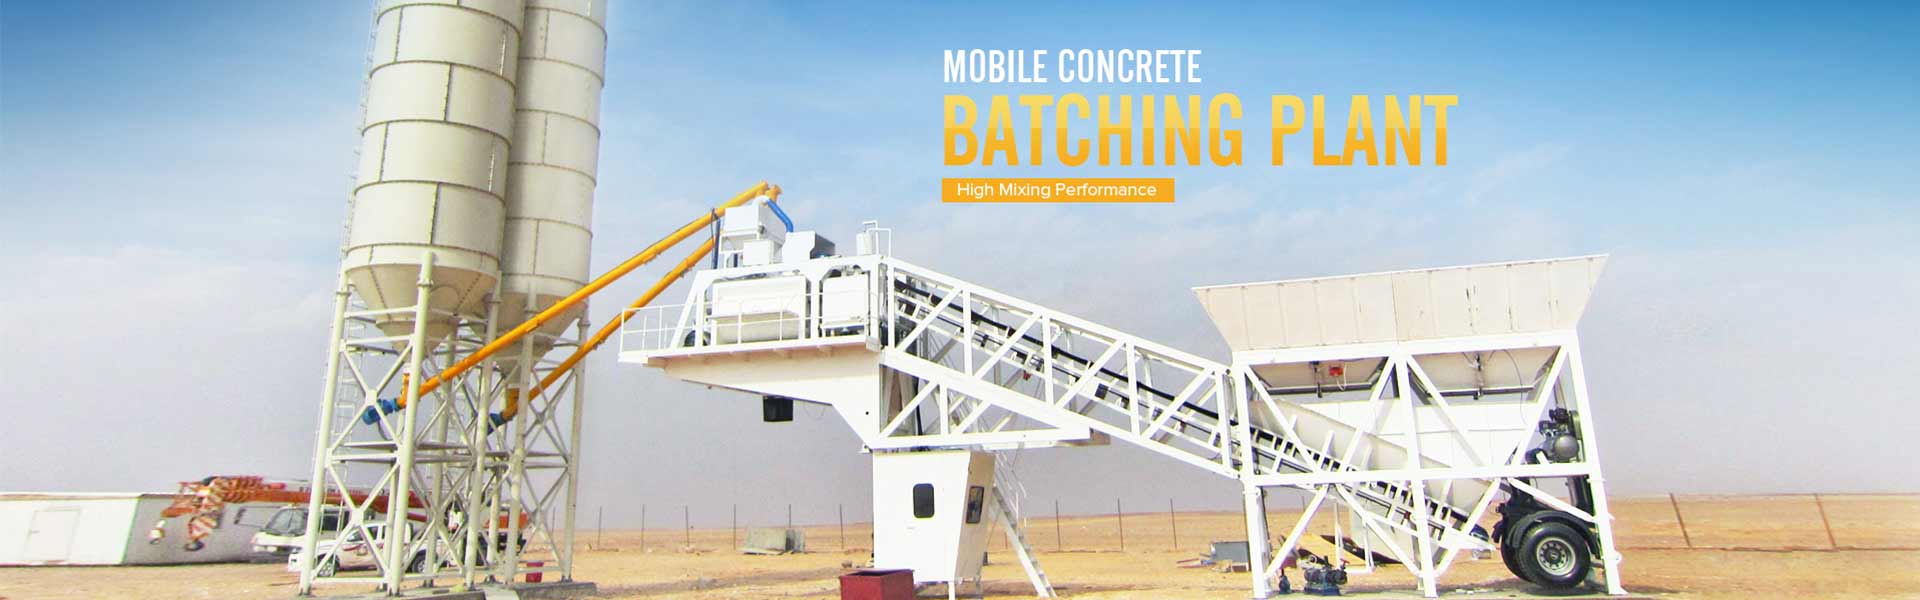 Mobile Concrete Batching Plants